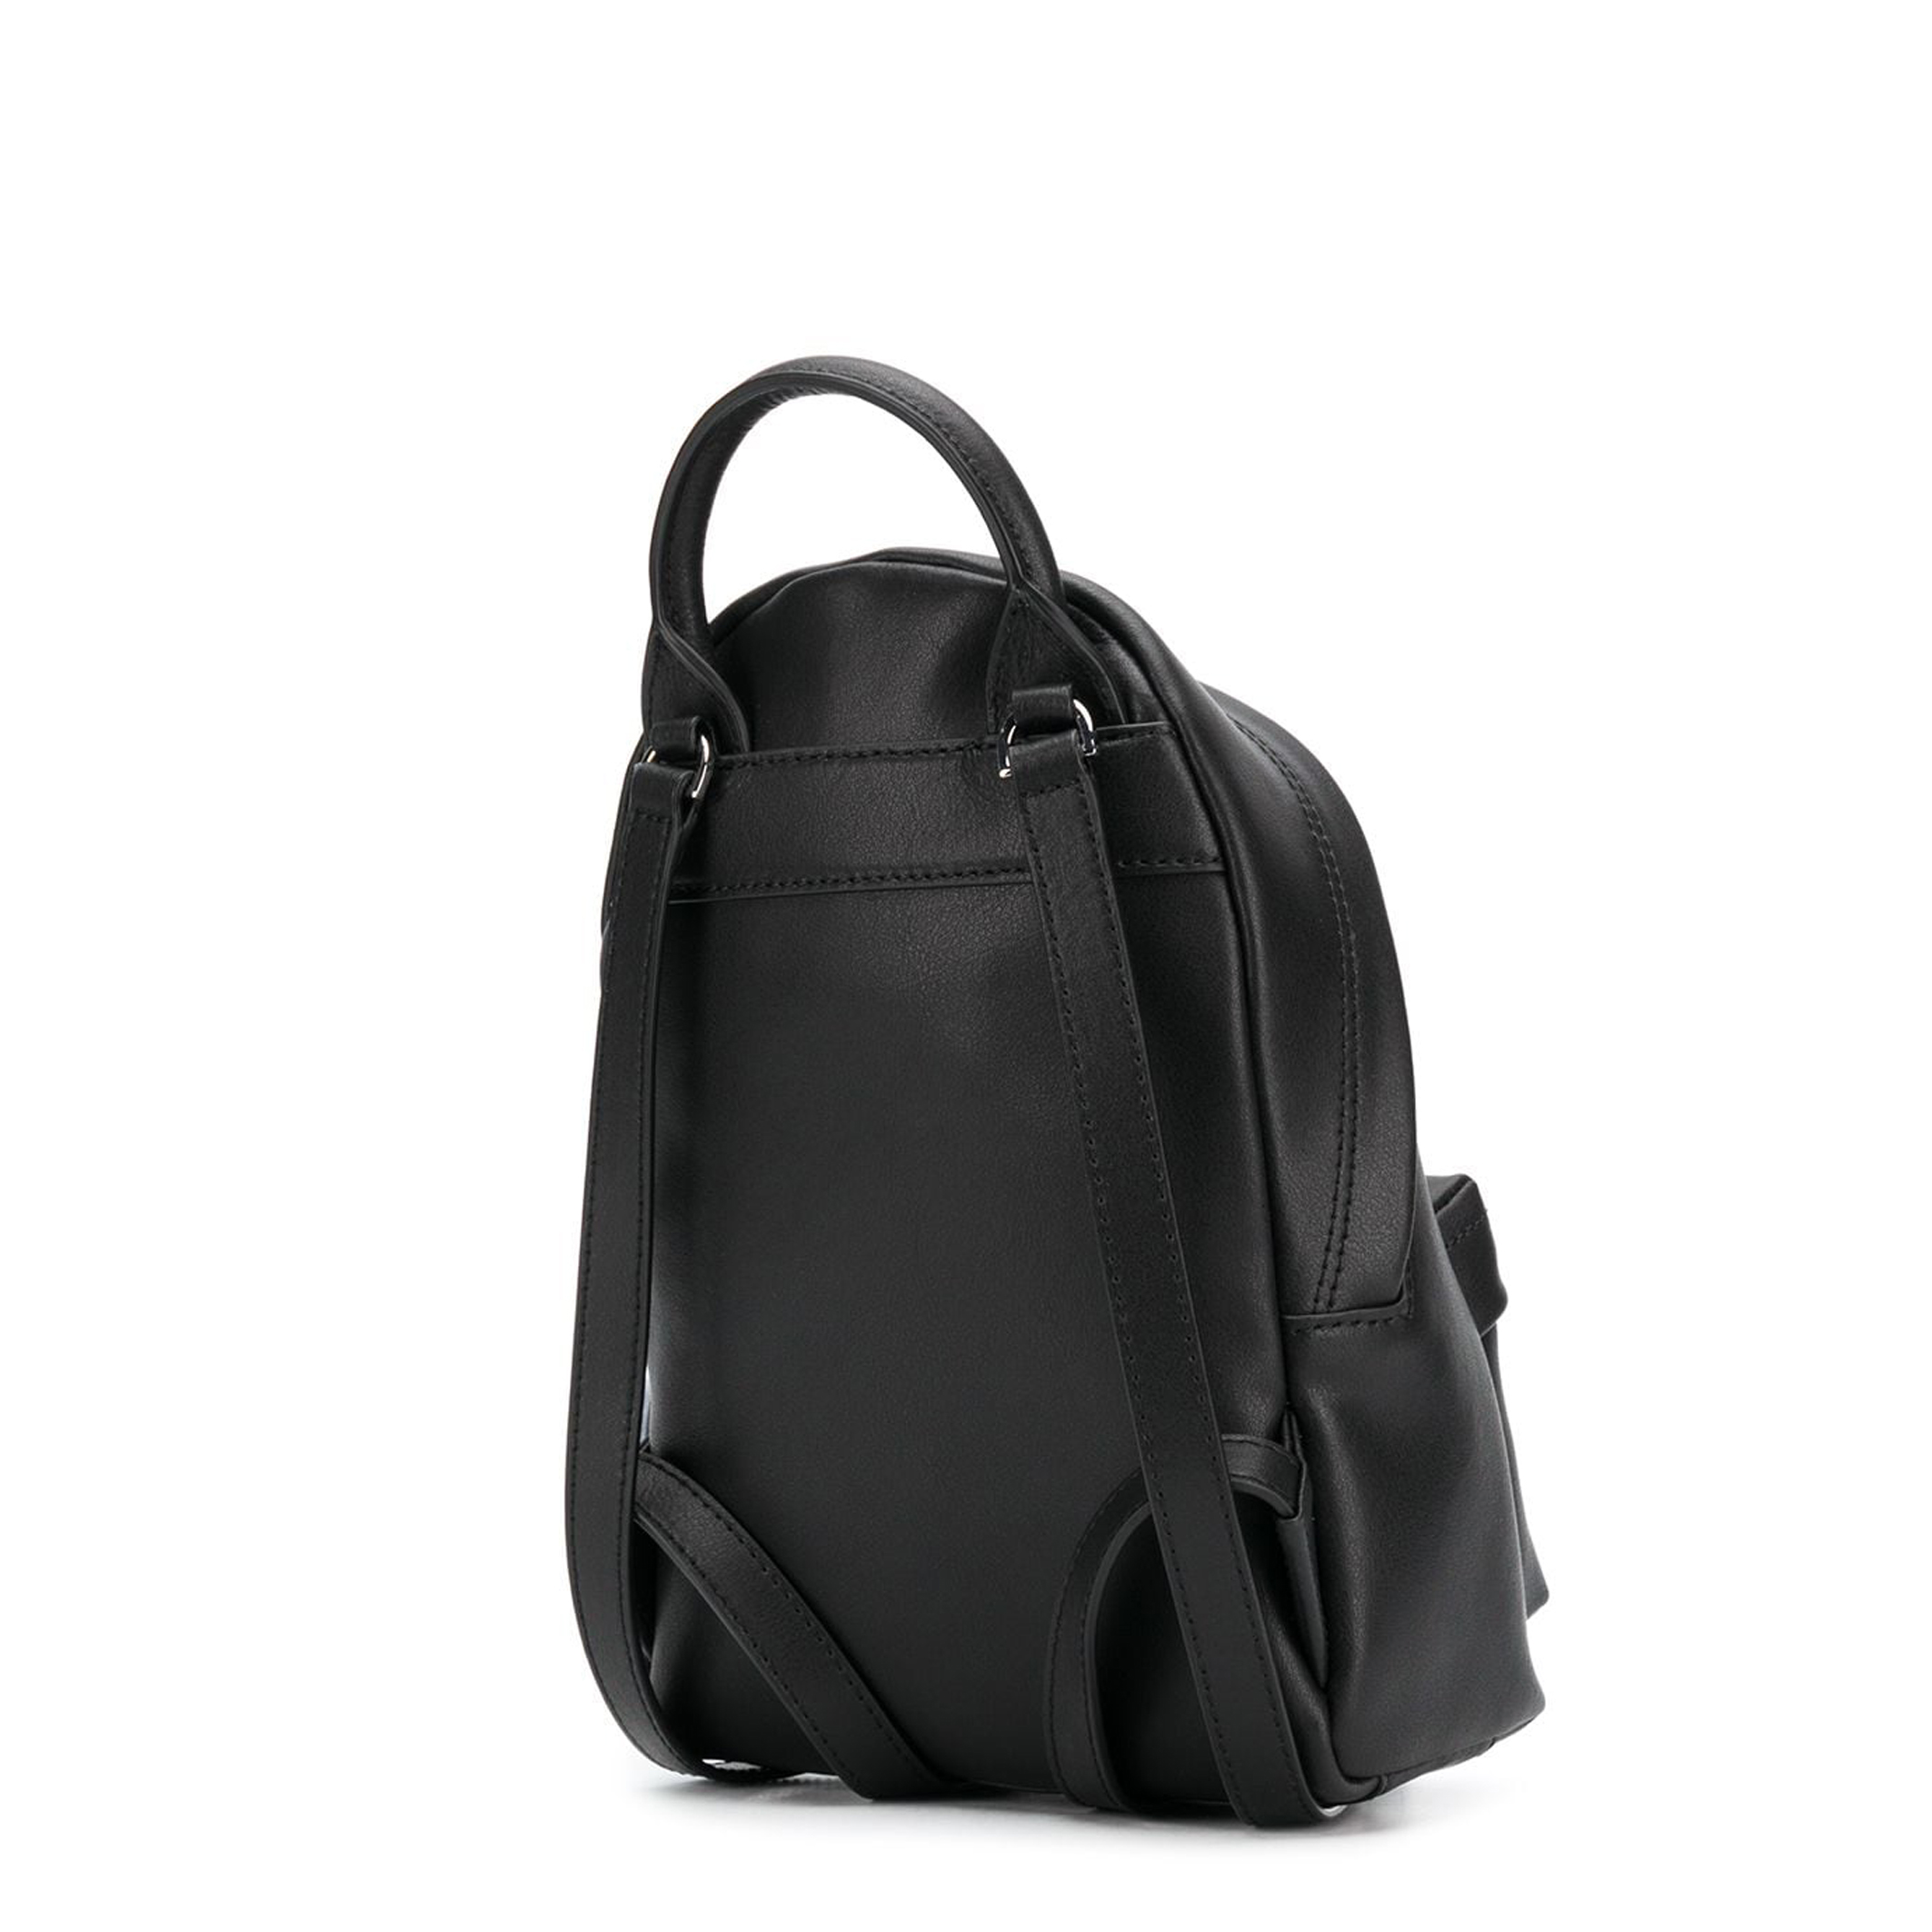 Karl Lagerfeld Black Rucksacks for Women - 205W3090